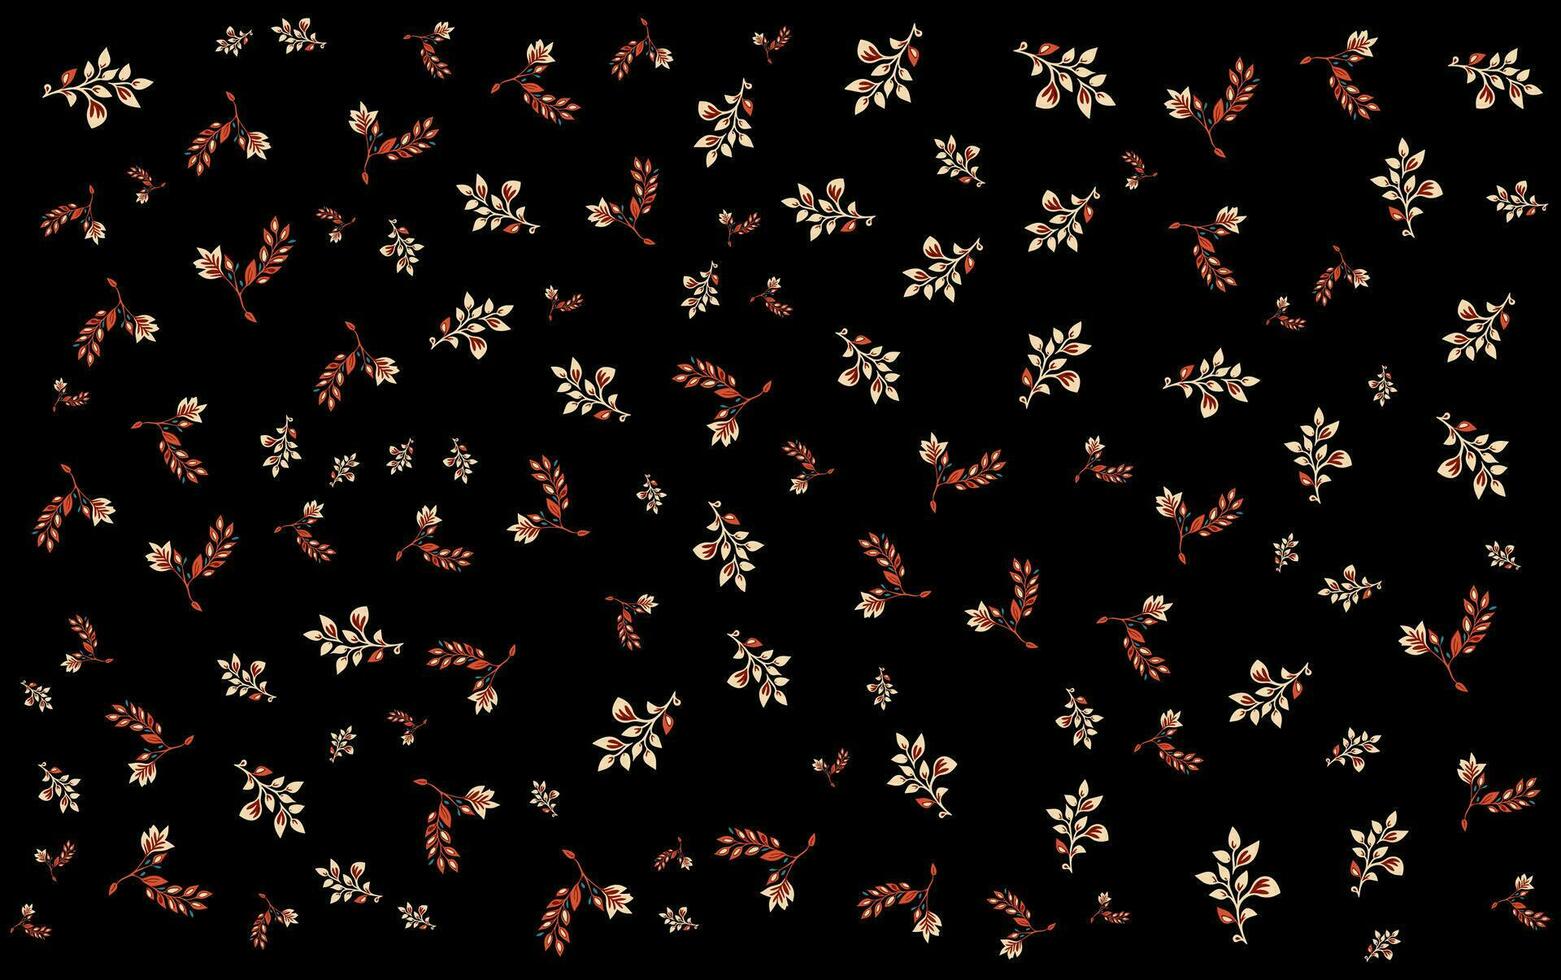 löv mönster av röd och vit löv på en svart bakgrund vektor